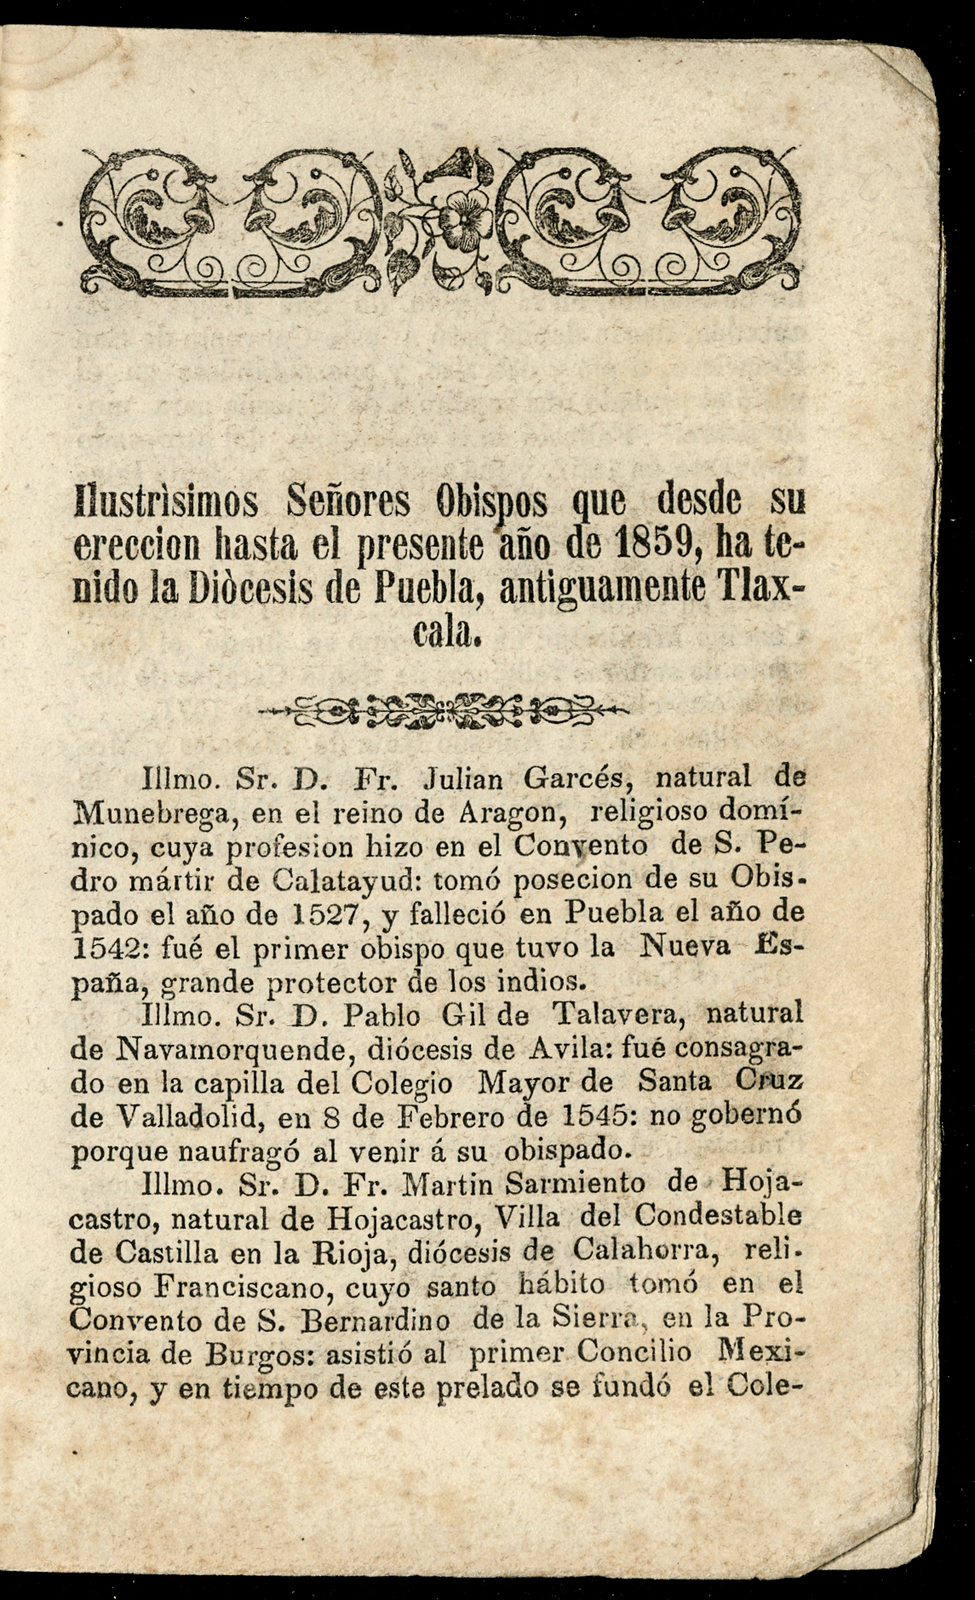 Quinto Calendario de J. María Rivera, arreglado al meridiano de Puebla, para el año de 1859.